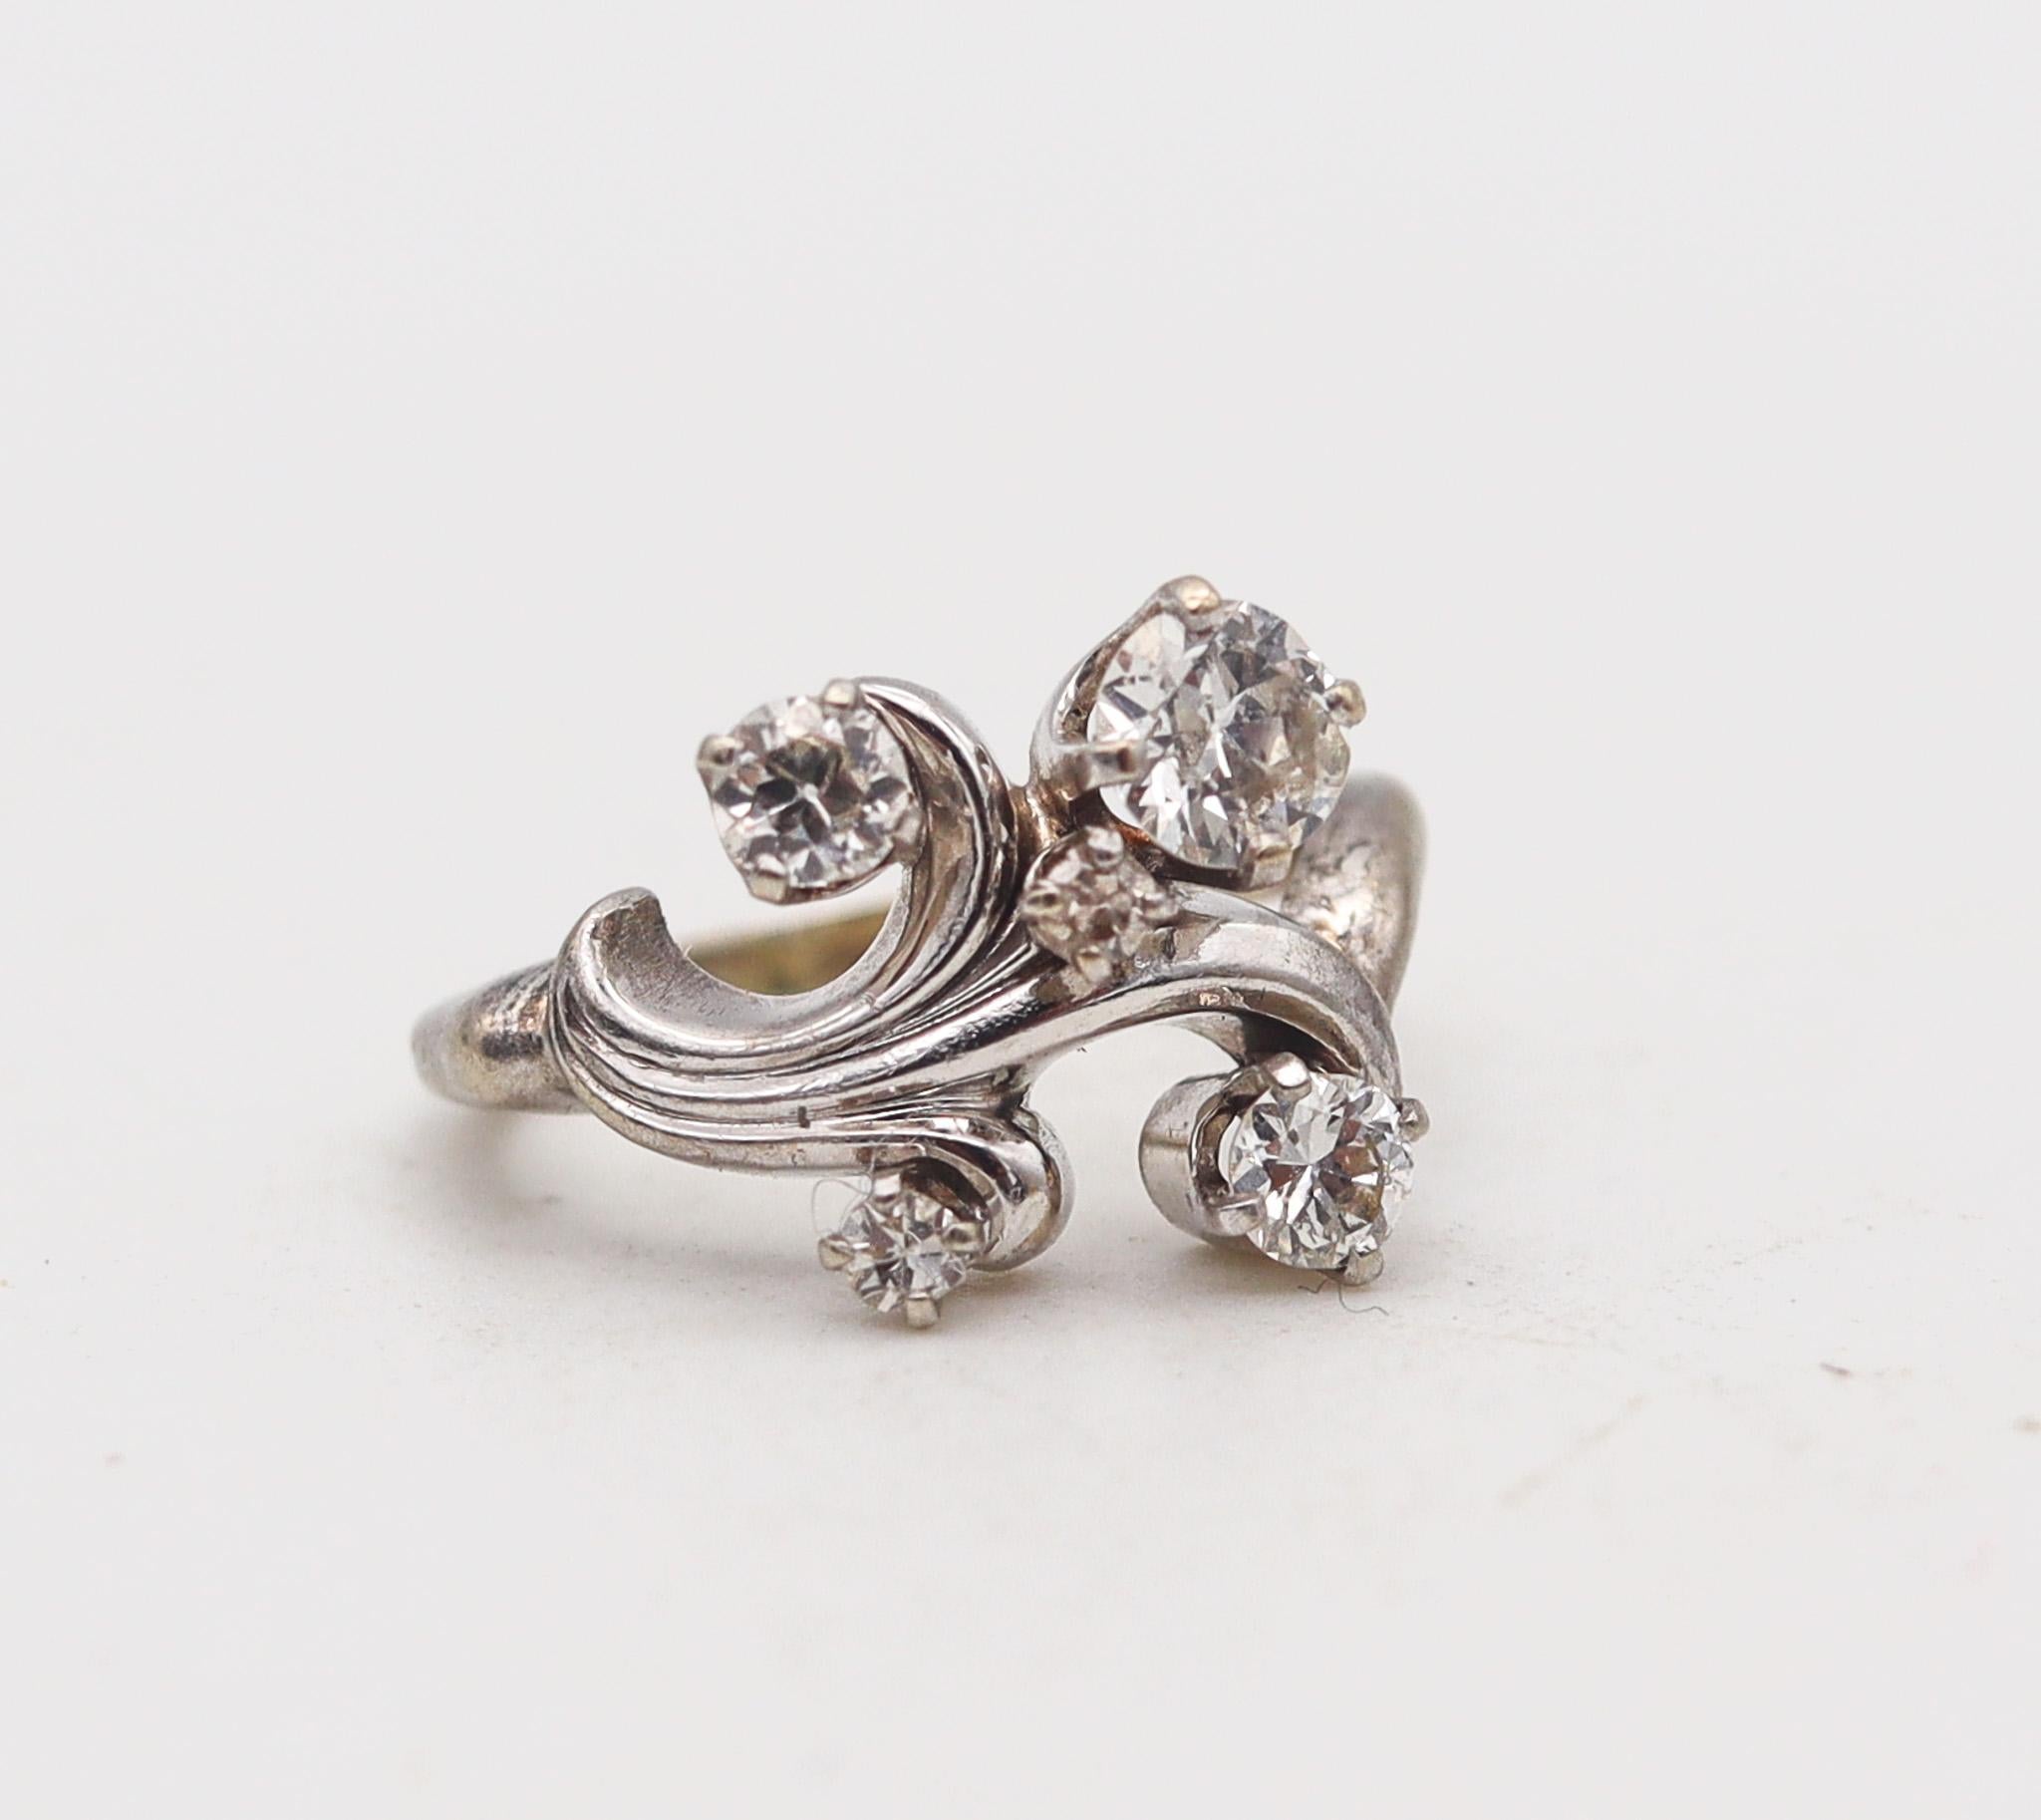 Ein Art-Déco-Retro-Ring mit europäischen Diamanten.

Sehr eleganter Wirbelring, der in Amerika während der späten Art-Déco- und Retro-Periode in den 1940er Jahren entstand. Dieser schöne Ring ist aus massivem 14-karätigem Weißgold mit polierter